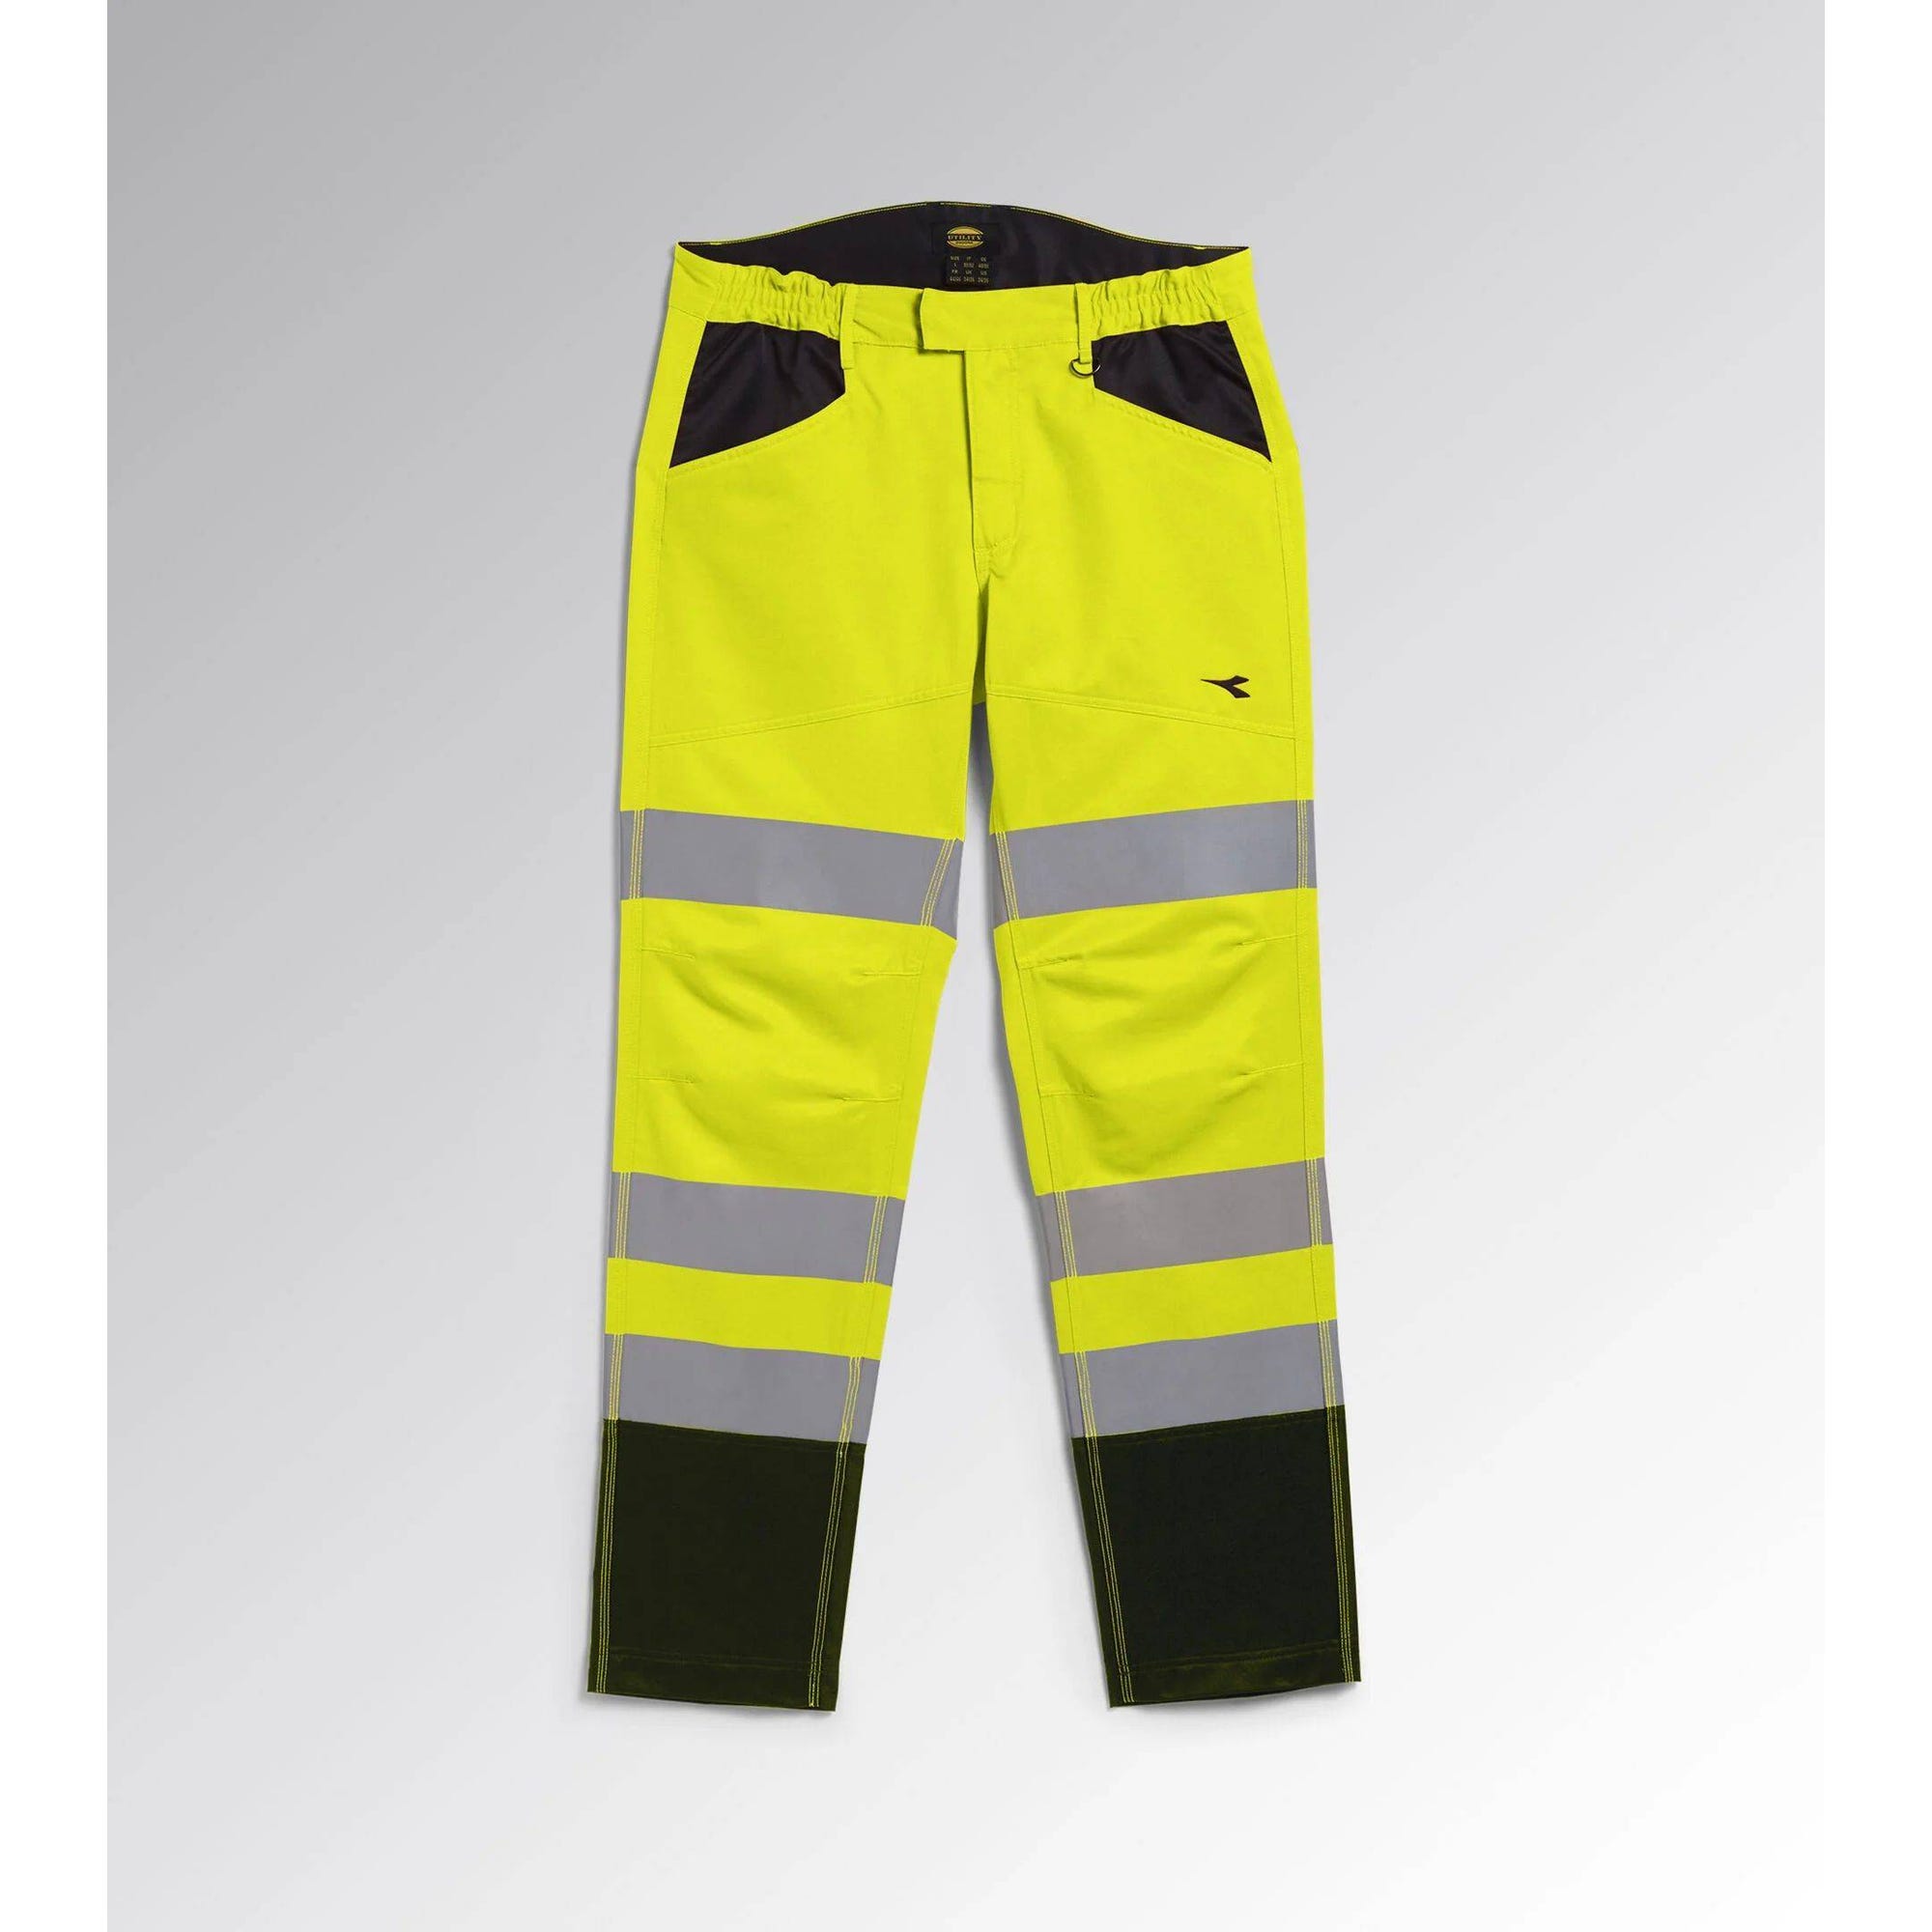 Pantalon de travail haute visibilité Diadora EN 20471:2013 2 Orange Fluo L 5